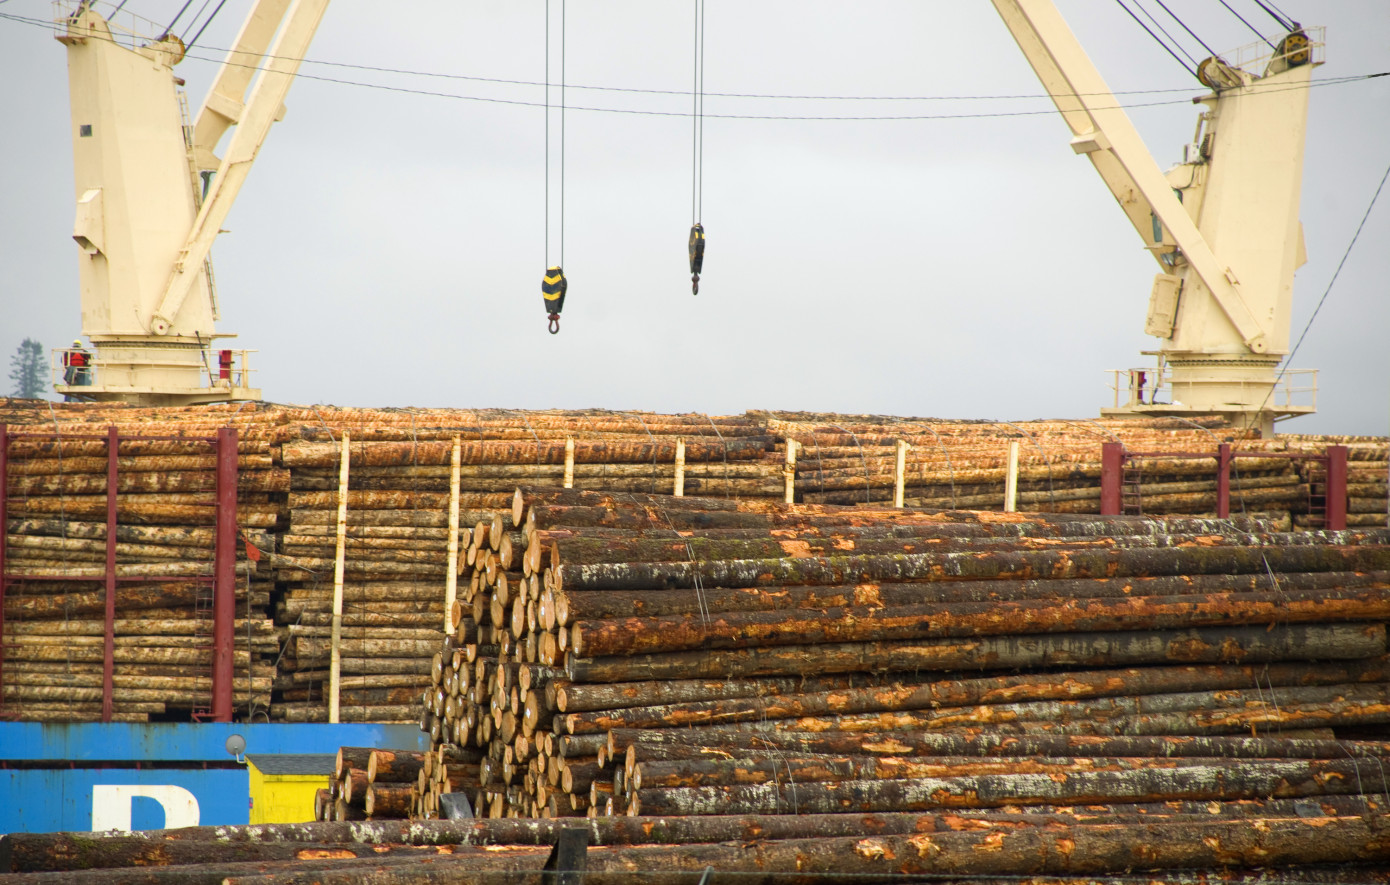 New Zealand export logs price falls 25% in June